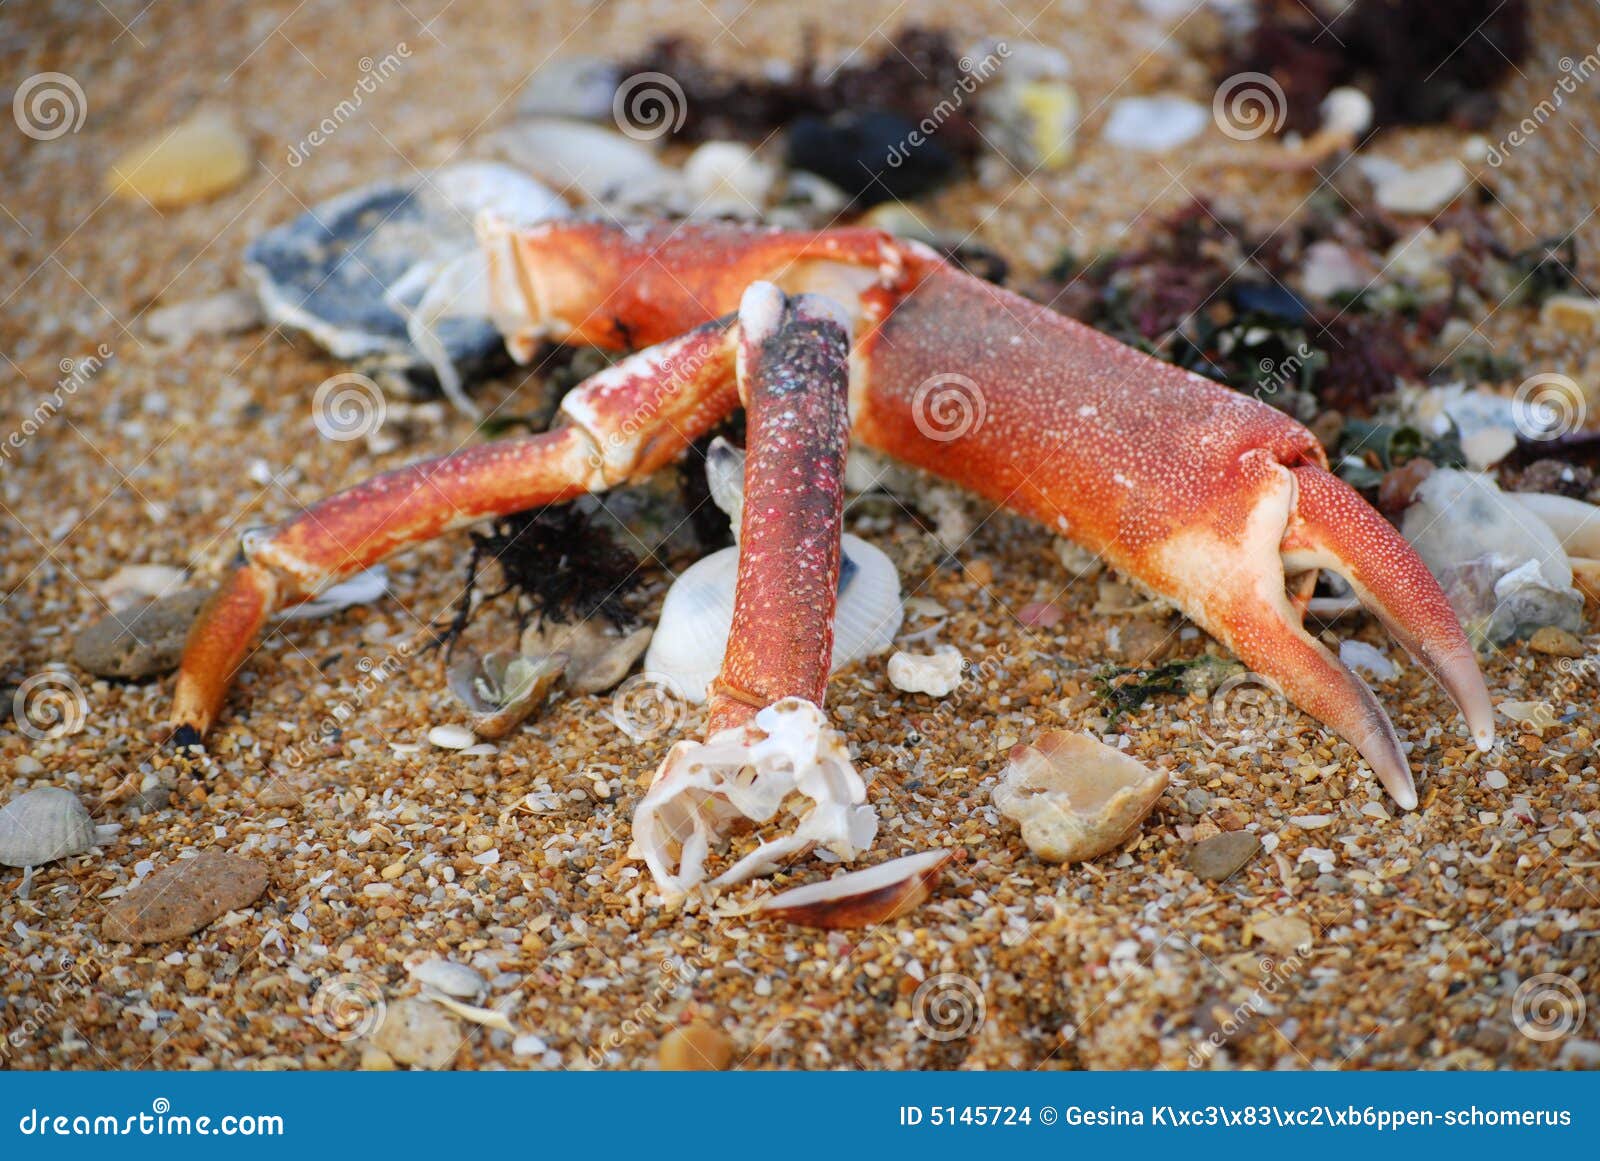 红色螃蟹 库存图片. 图片 包括有 新鲜, 巴厘岛, 生物, 特写镜头, 眼睛, 地中海, 异乎寻常, 捉住 - 28056445